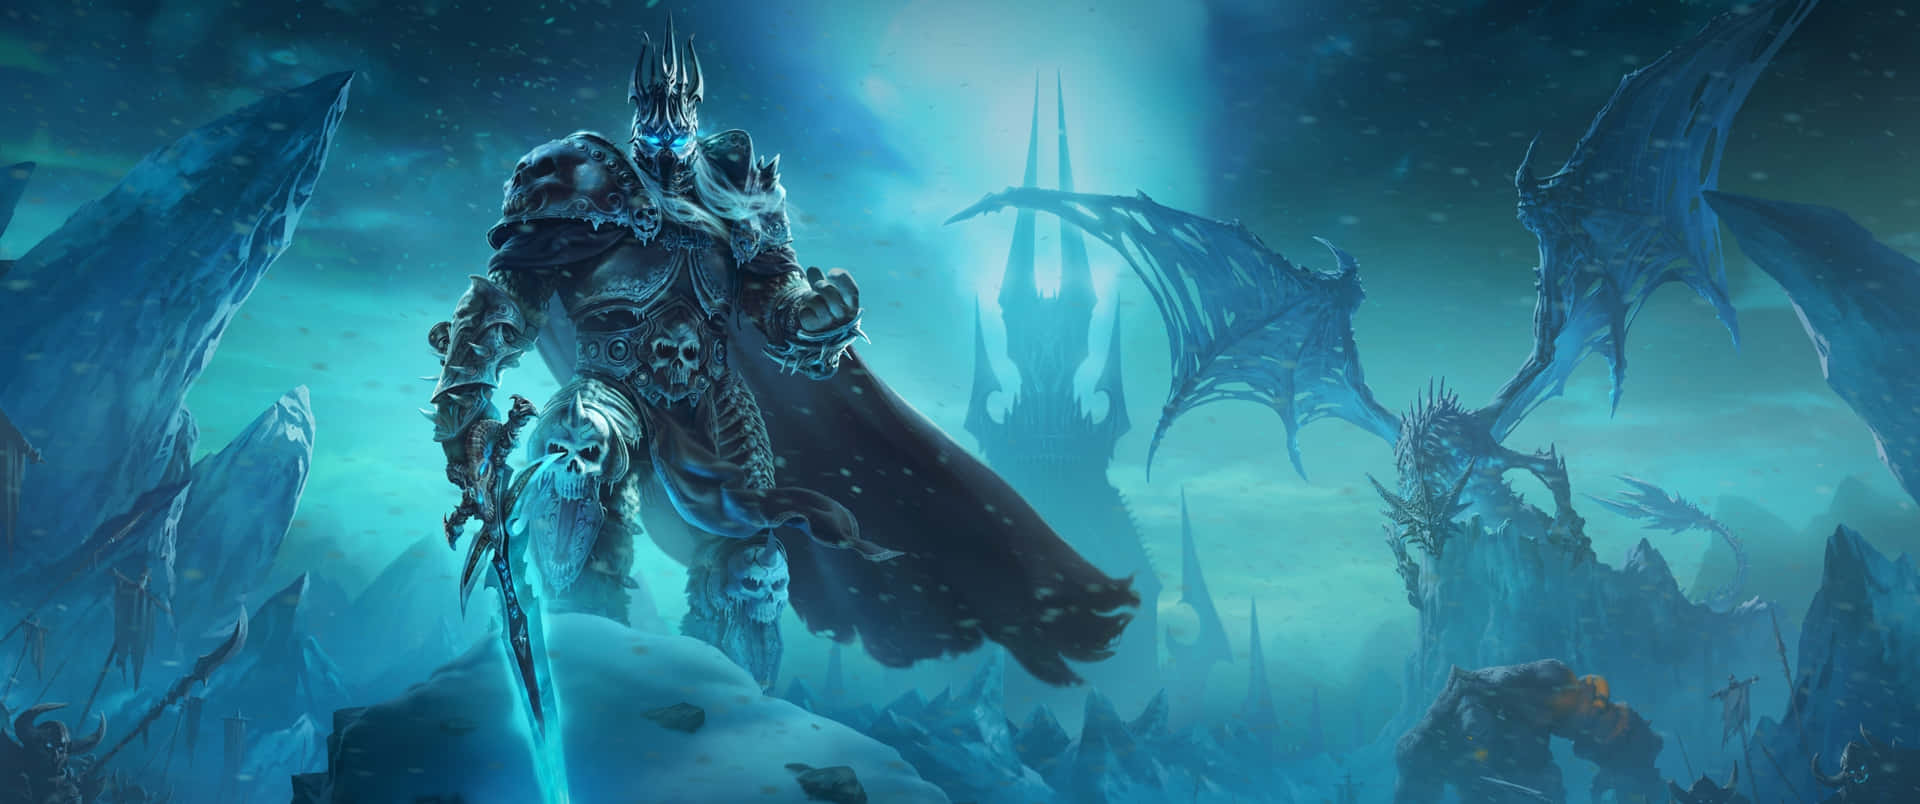 Worldof Warcraft 3440 X 1440 Bakgrund